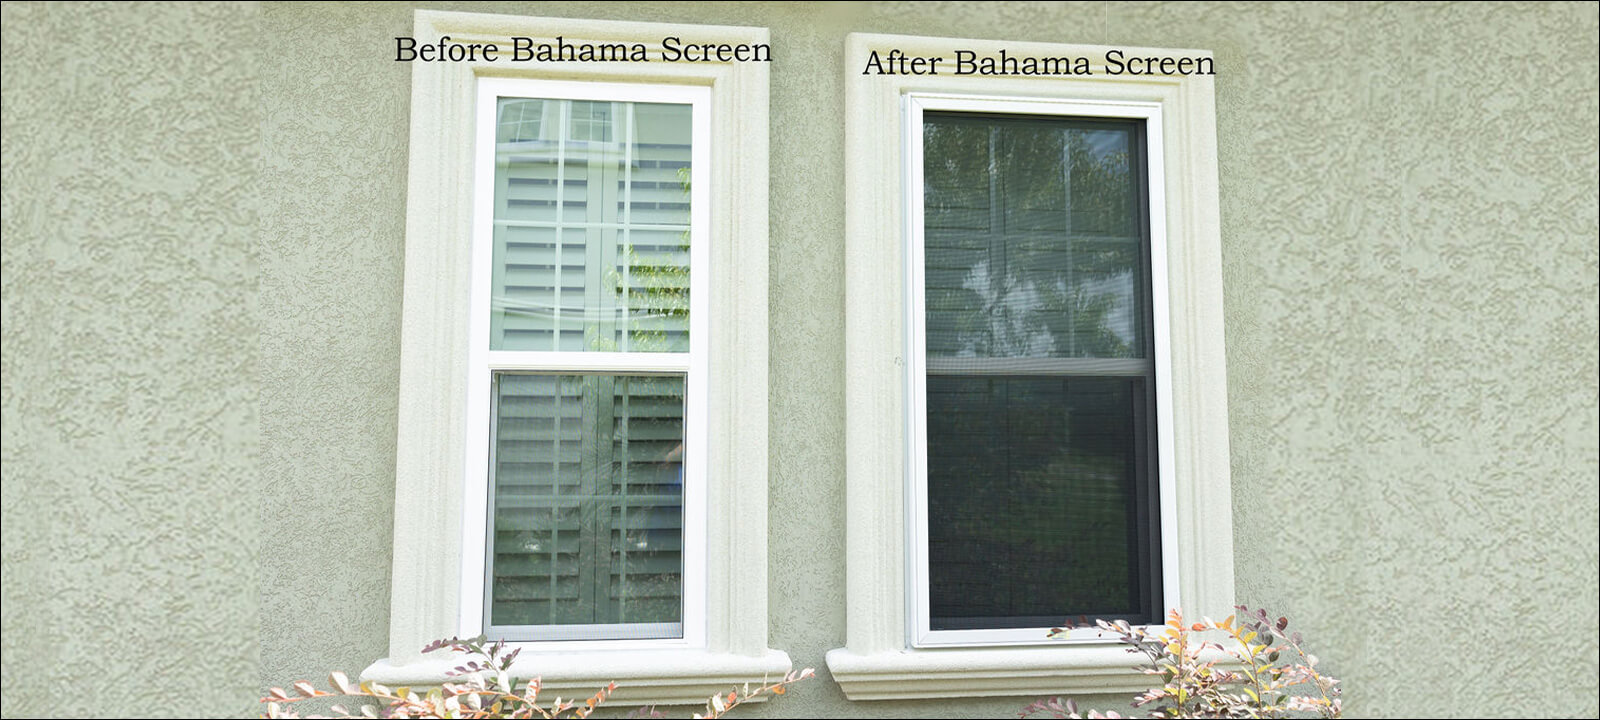 Bahama Screen Resize V1 1600x720